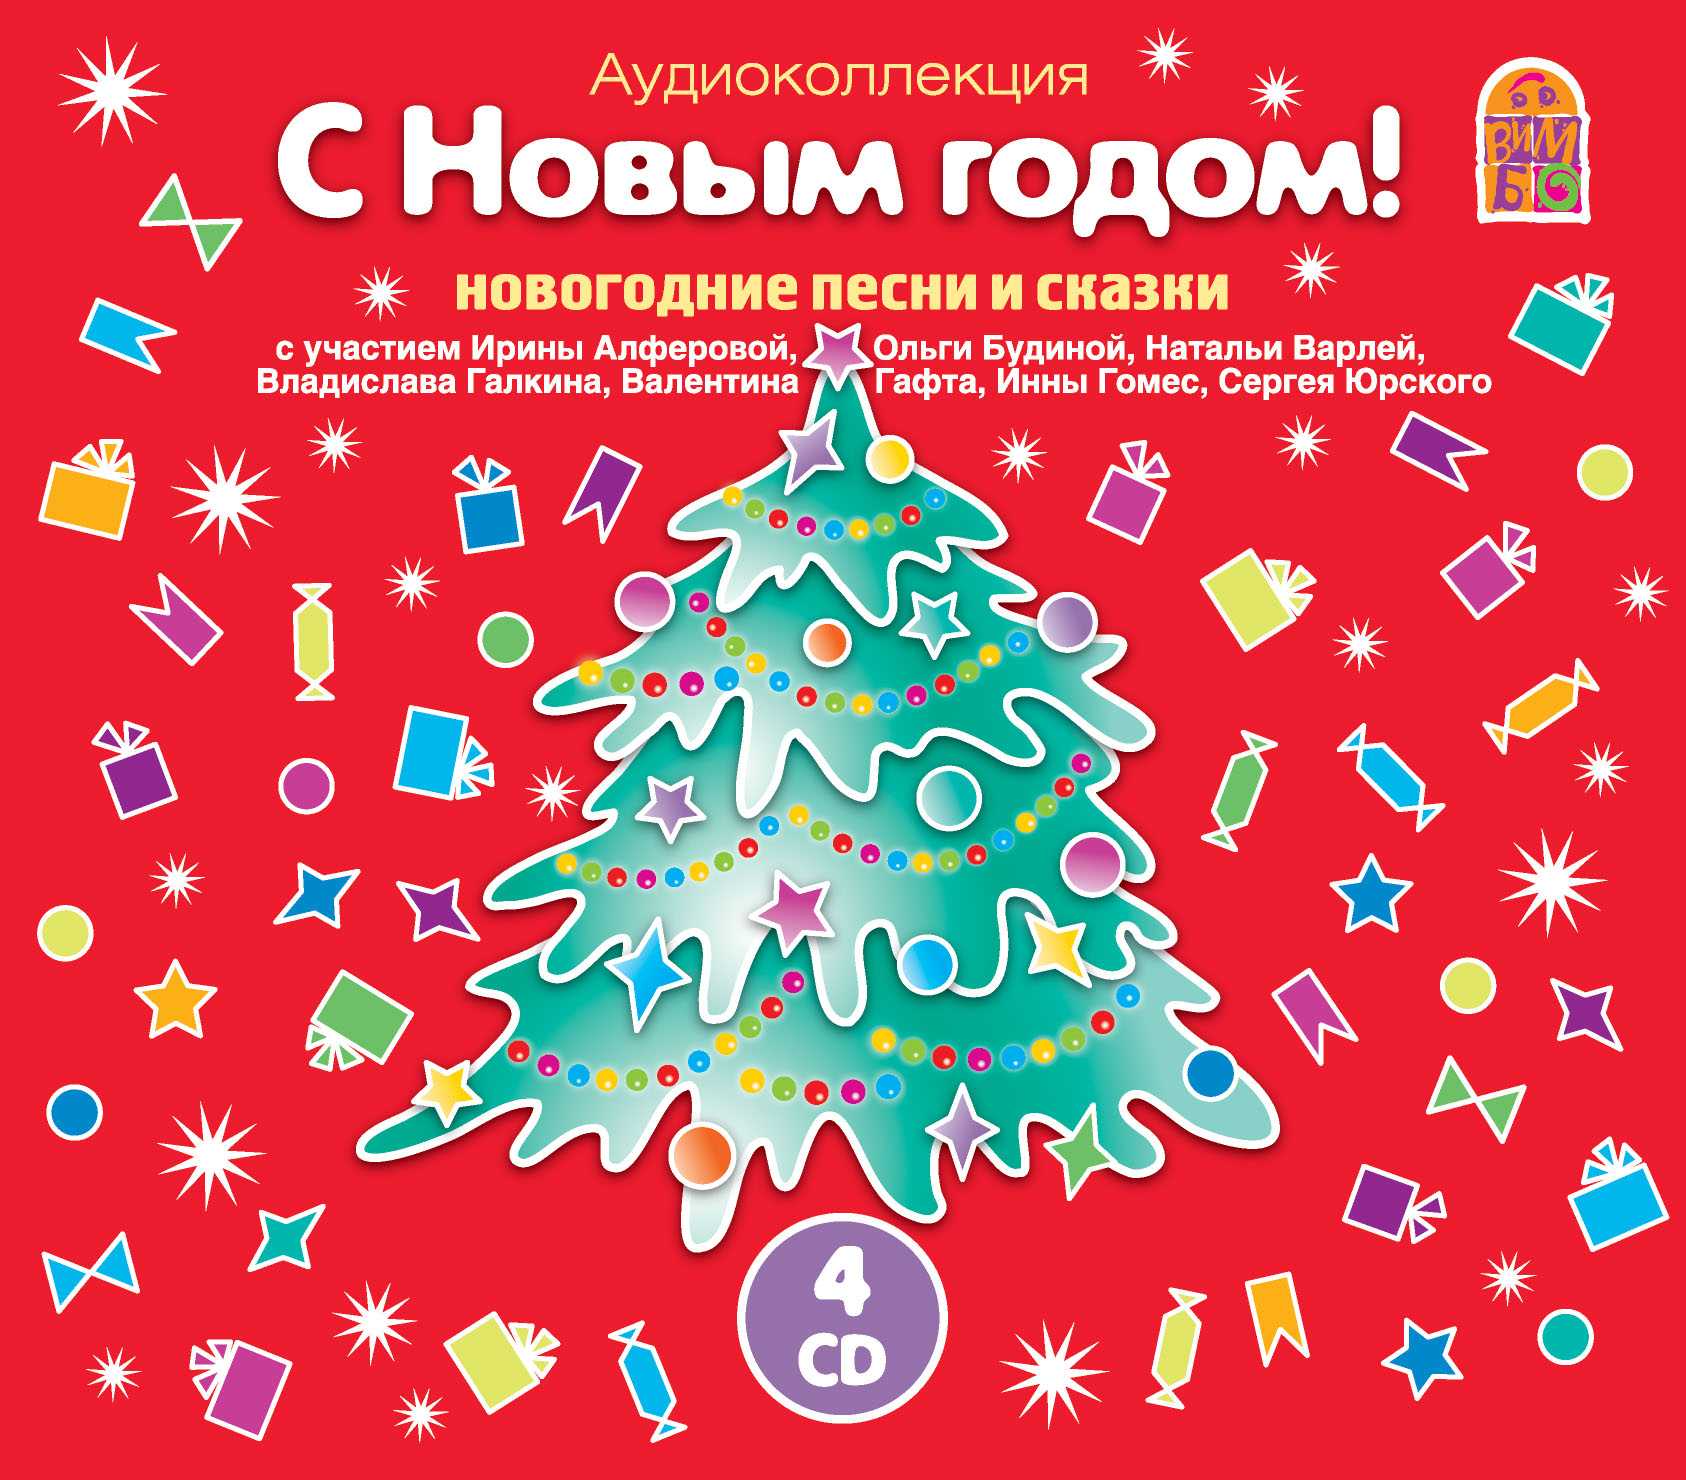 Детские новогодние песни слушать онлайн бесплатно | ozornik.net